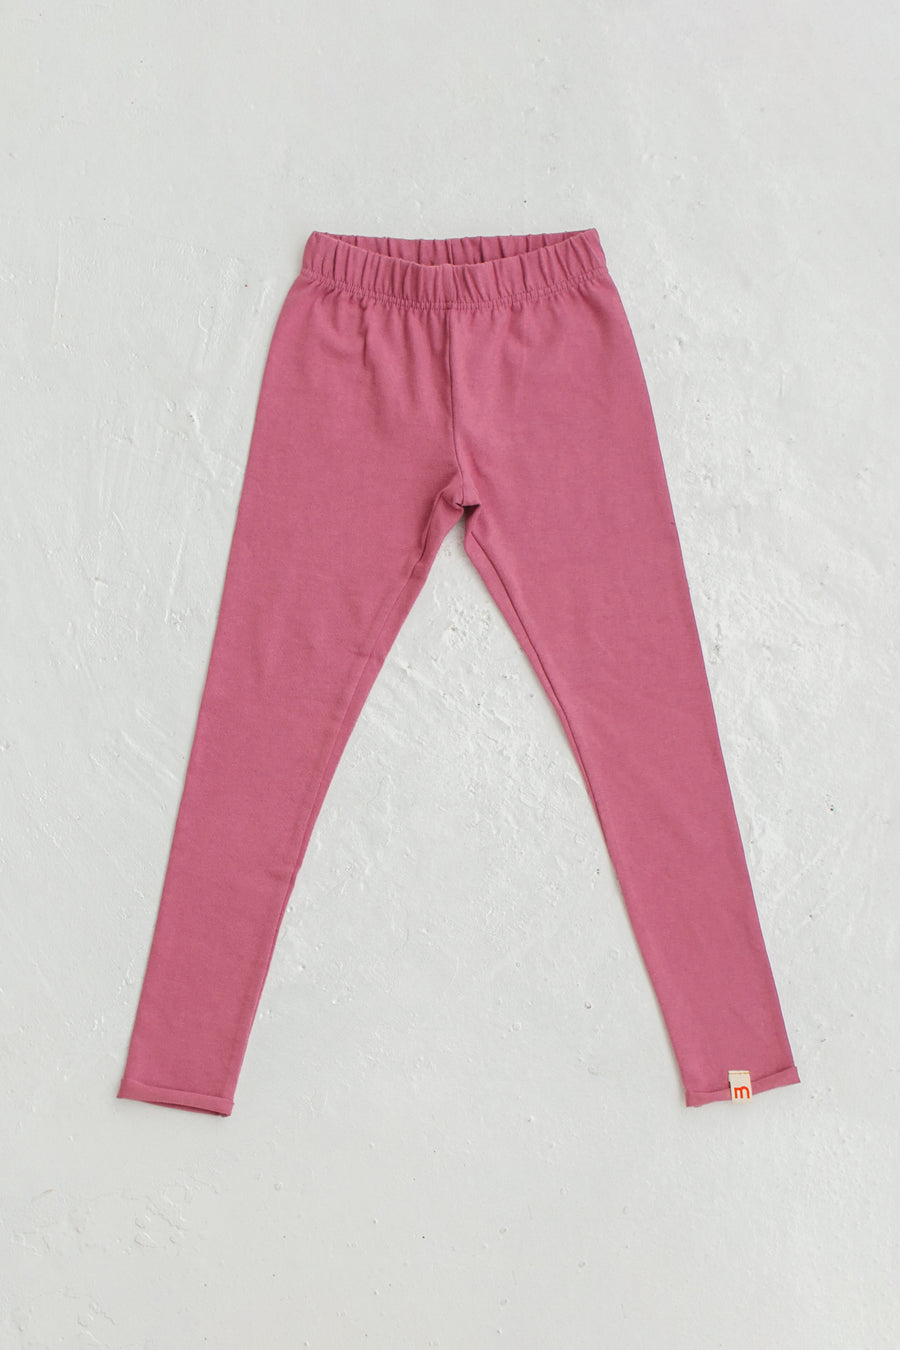 dark pink leggings